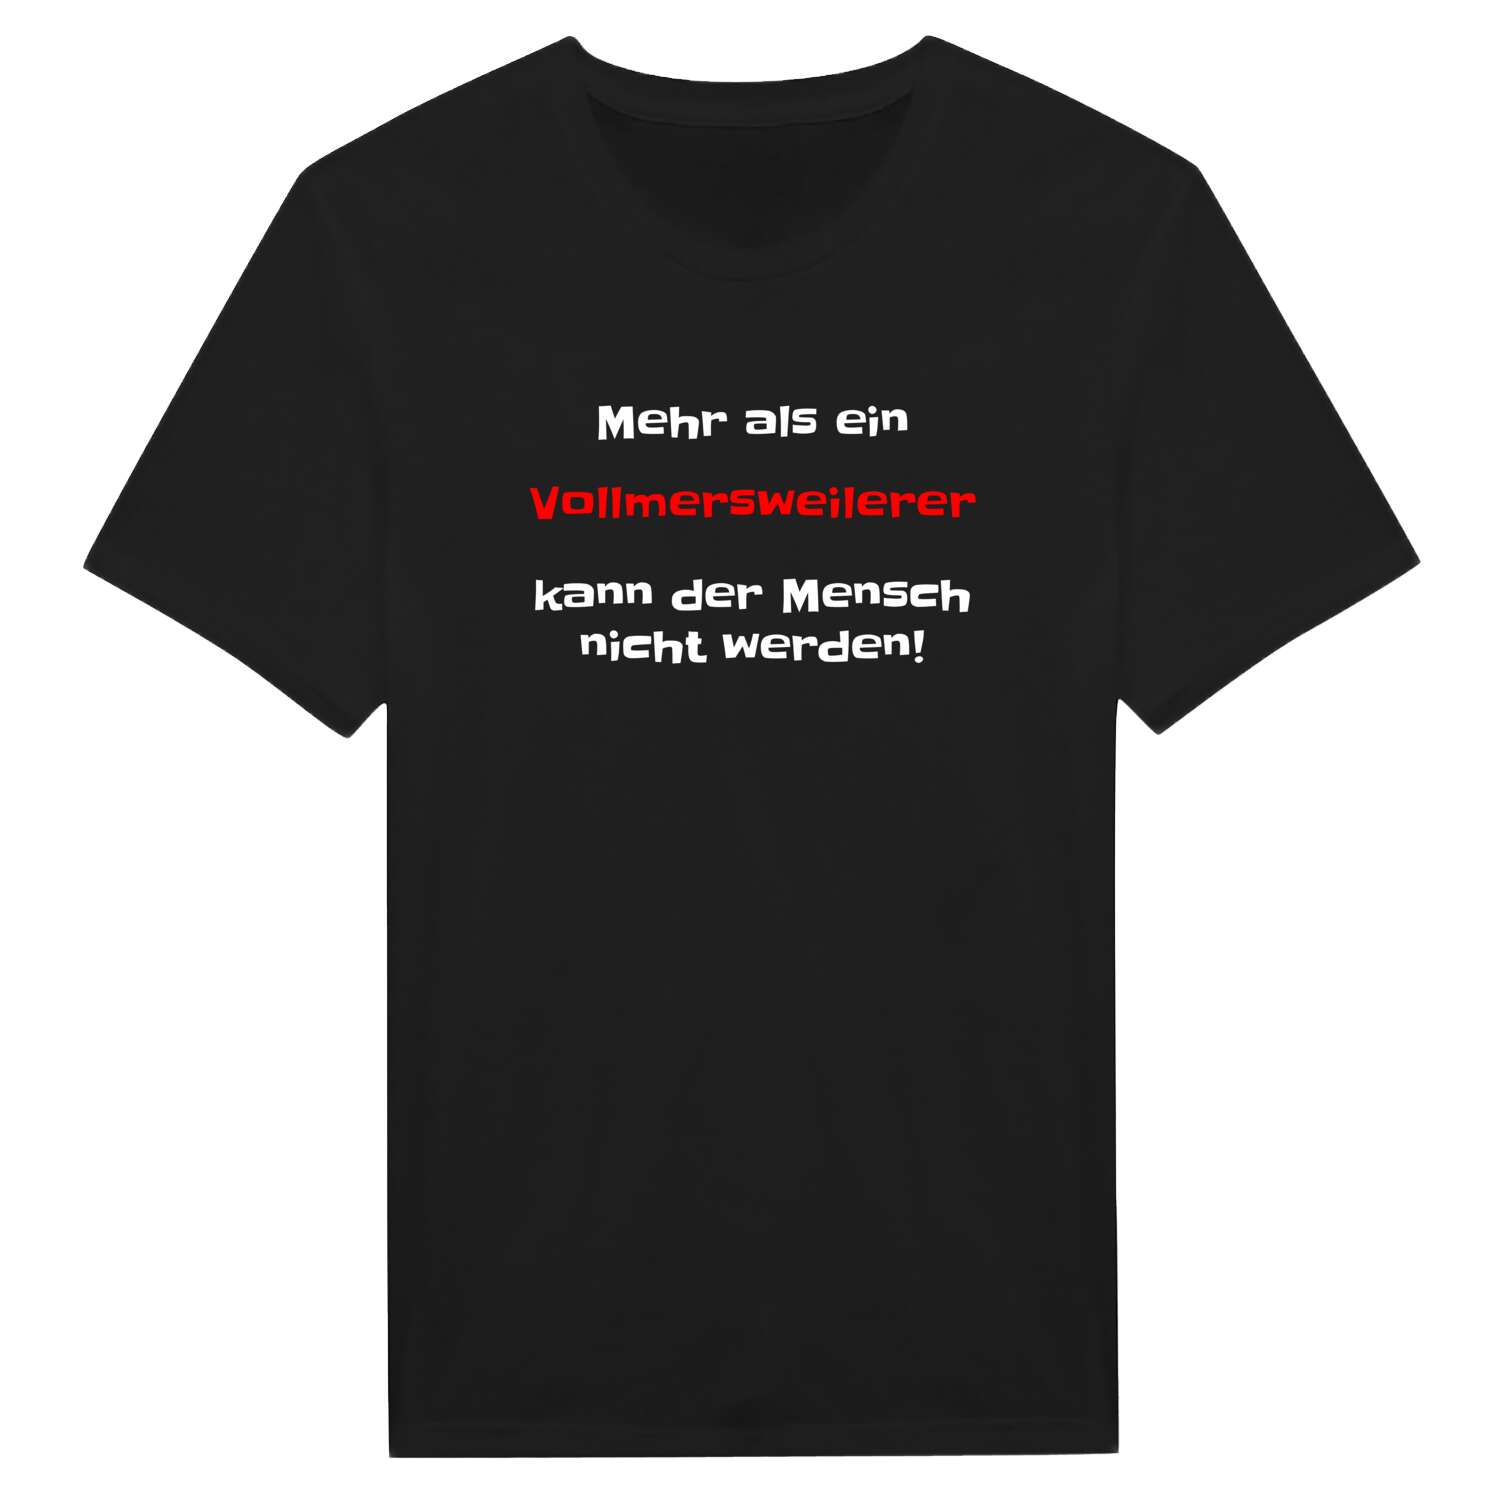 Vollmersweiler T-Shirt »Mehr als ein«